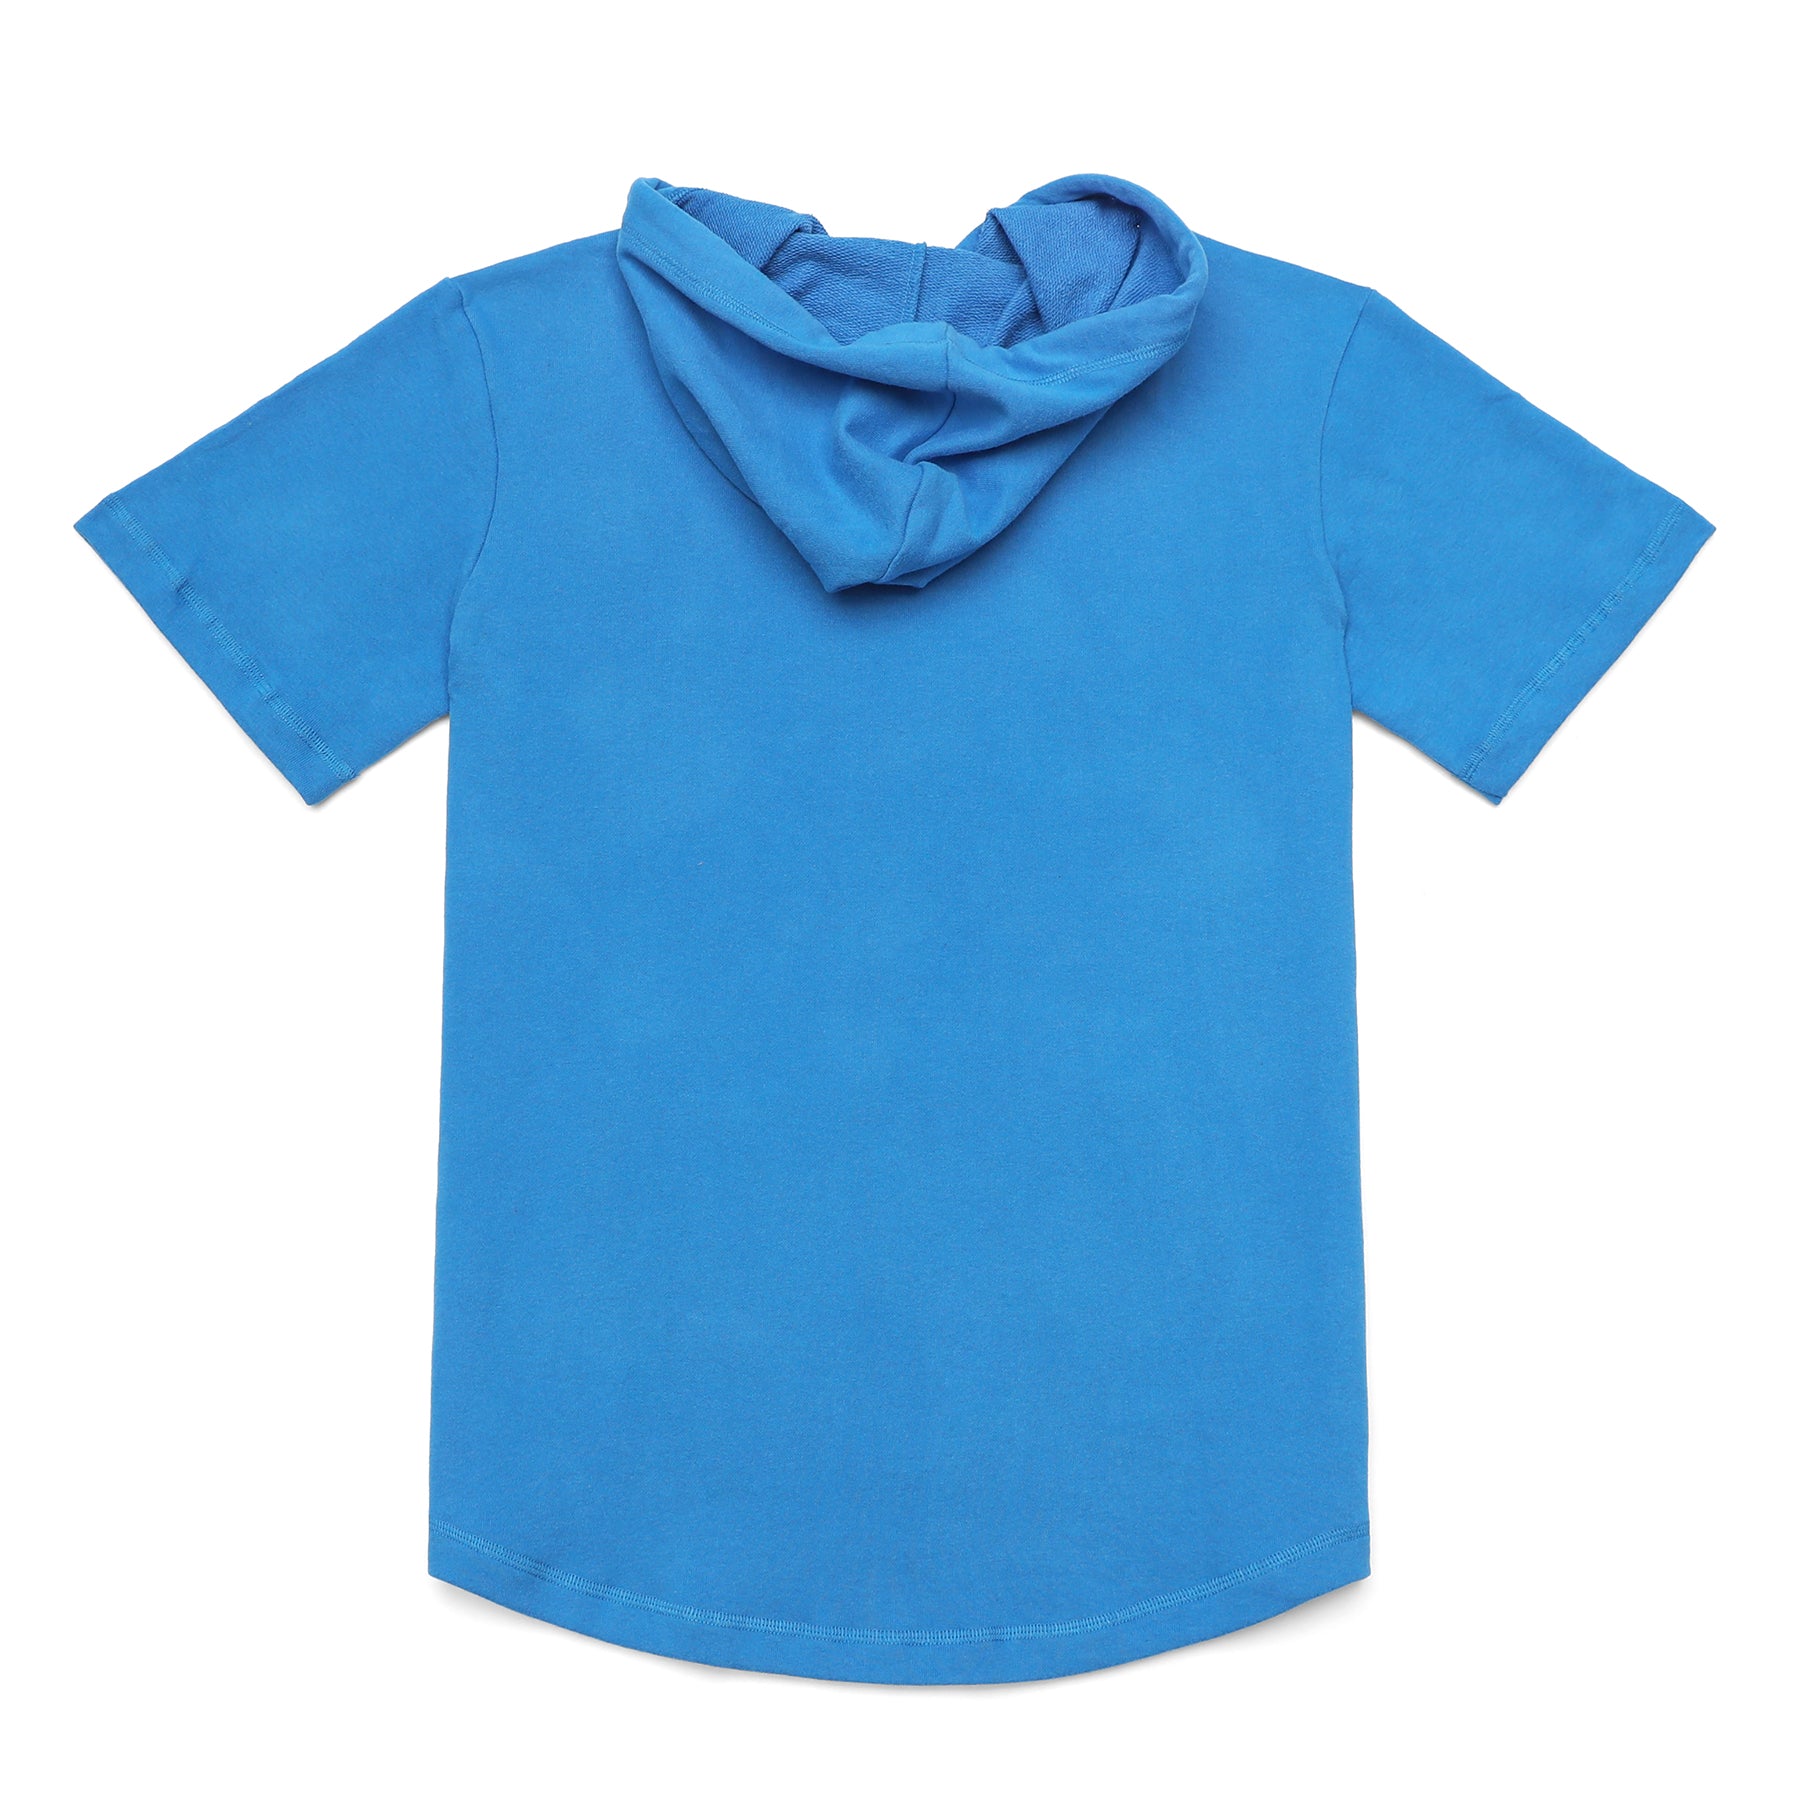 Men's Hoodies short-sleeved hooded sweatshirt #0610